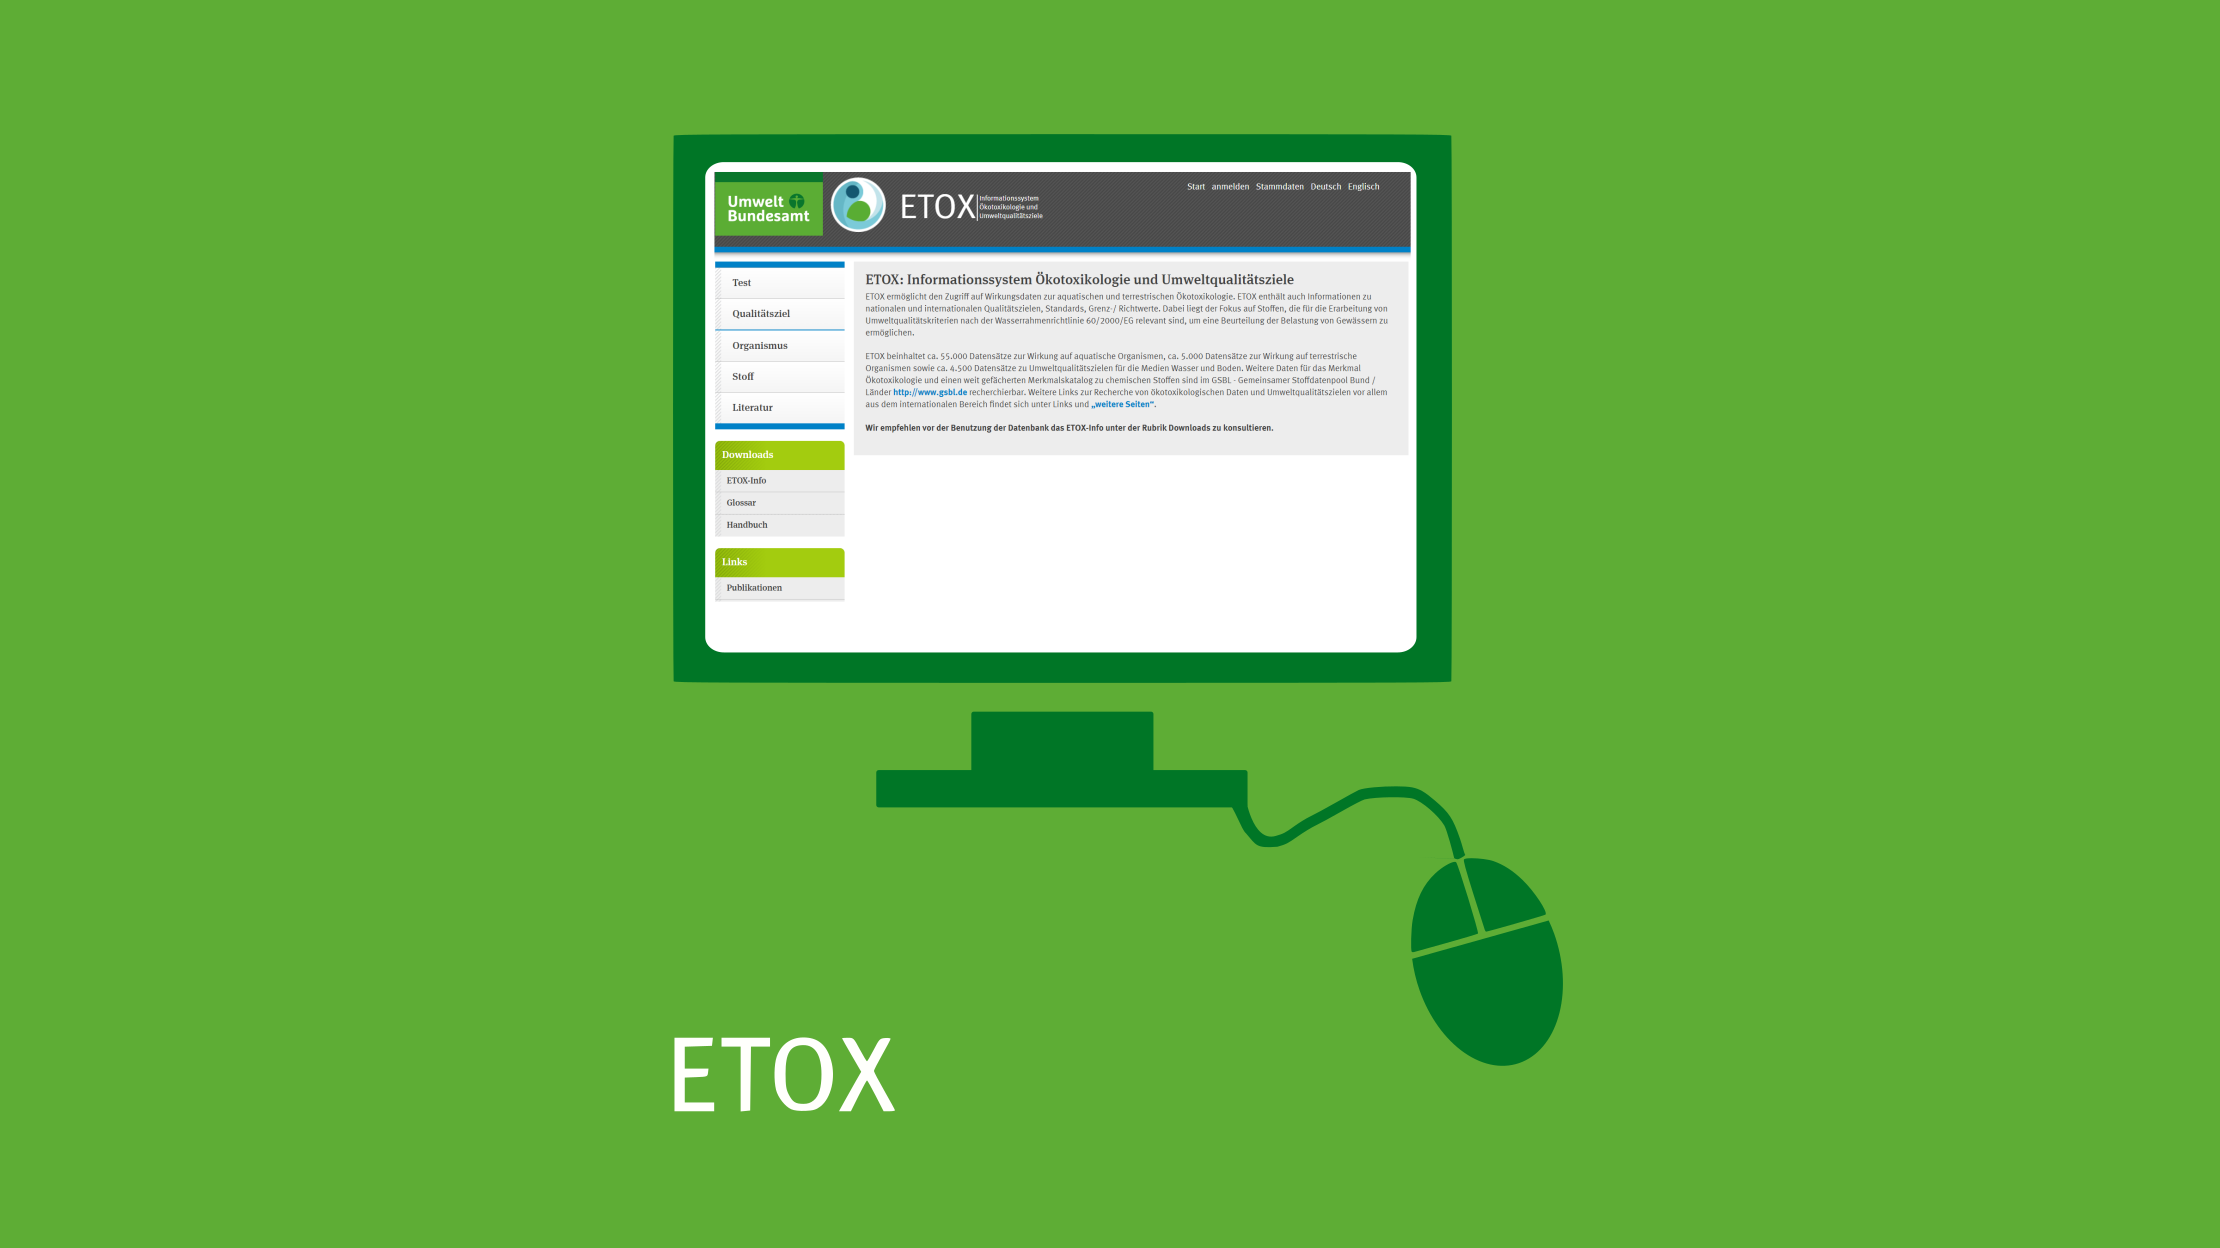 Mit Klick aufs Bild gelangen Sie zur verlinkten ETOX-Datenbank-Website.